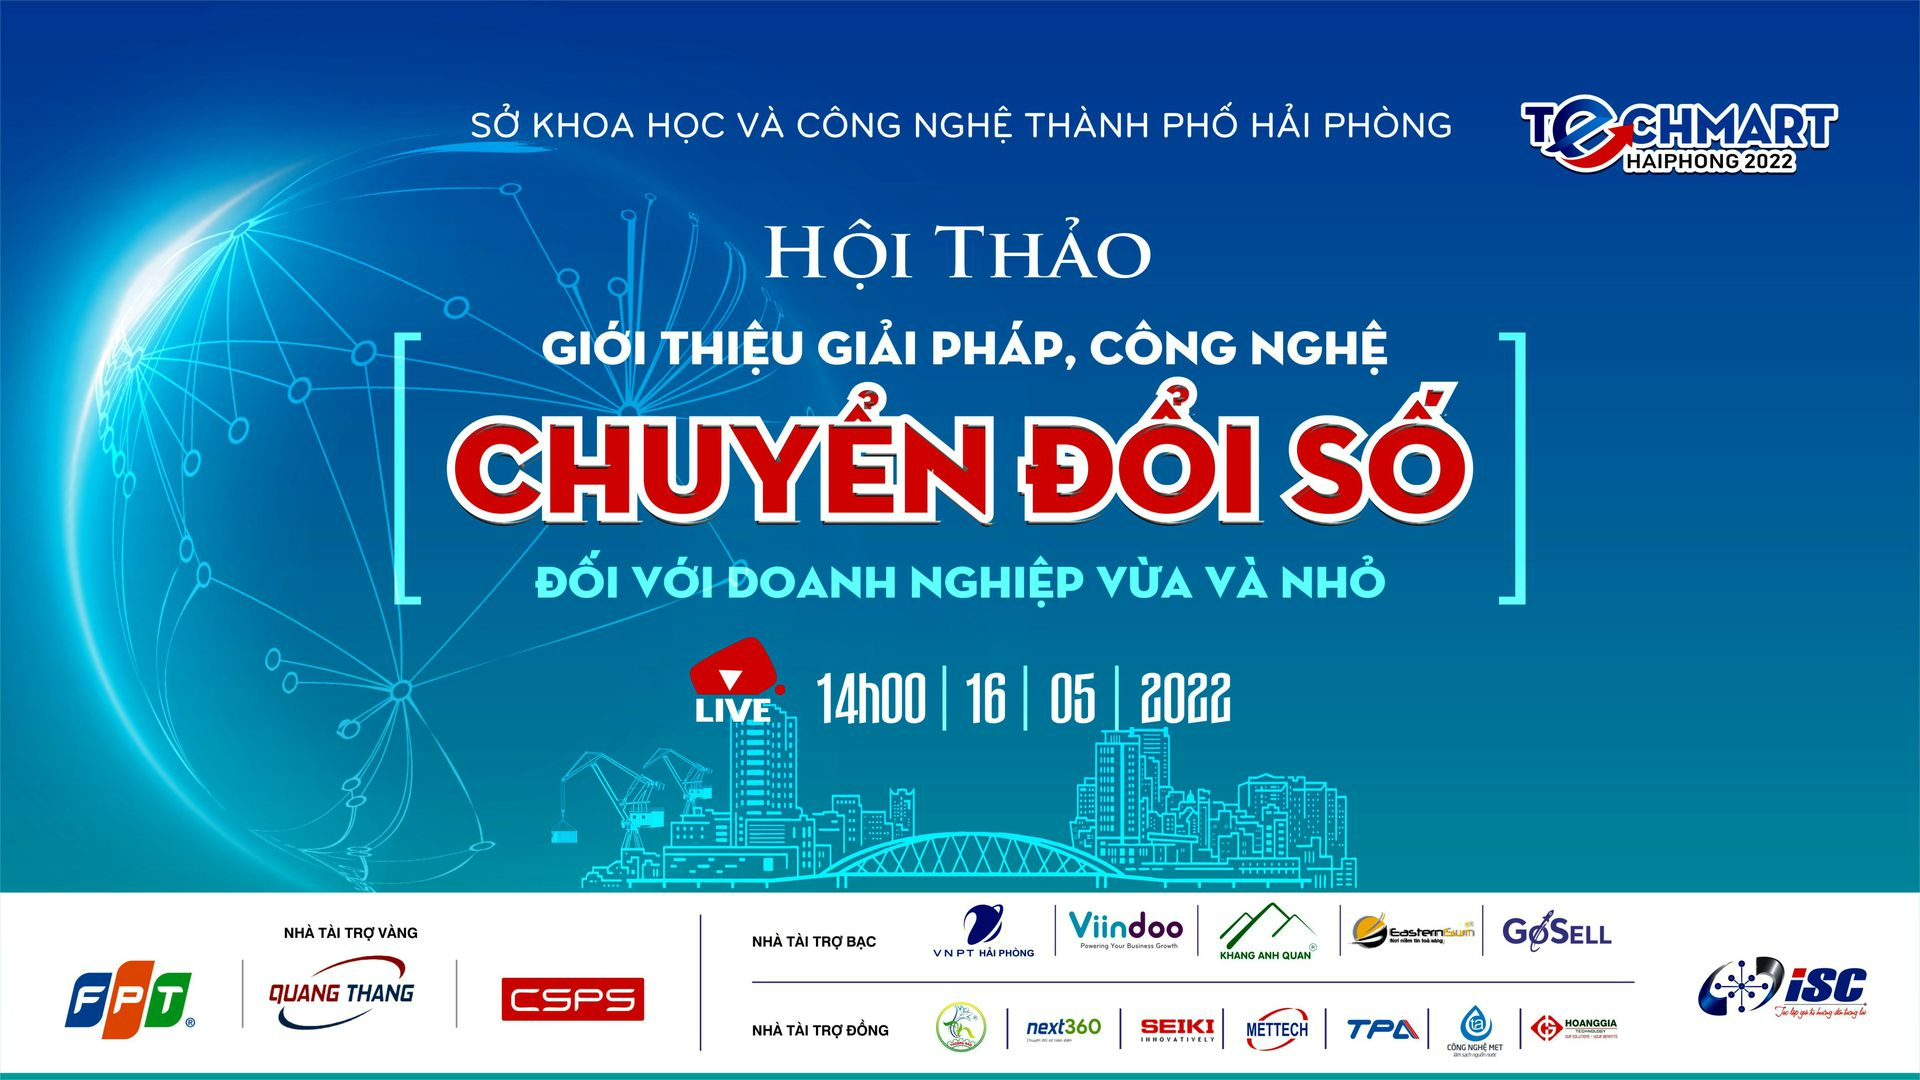 Viindoo - Nhà Tài trợ Đồng hành cùng Techmart Haiphong 2022